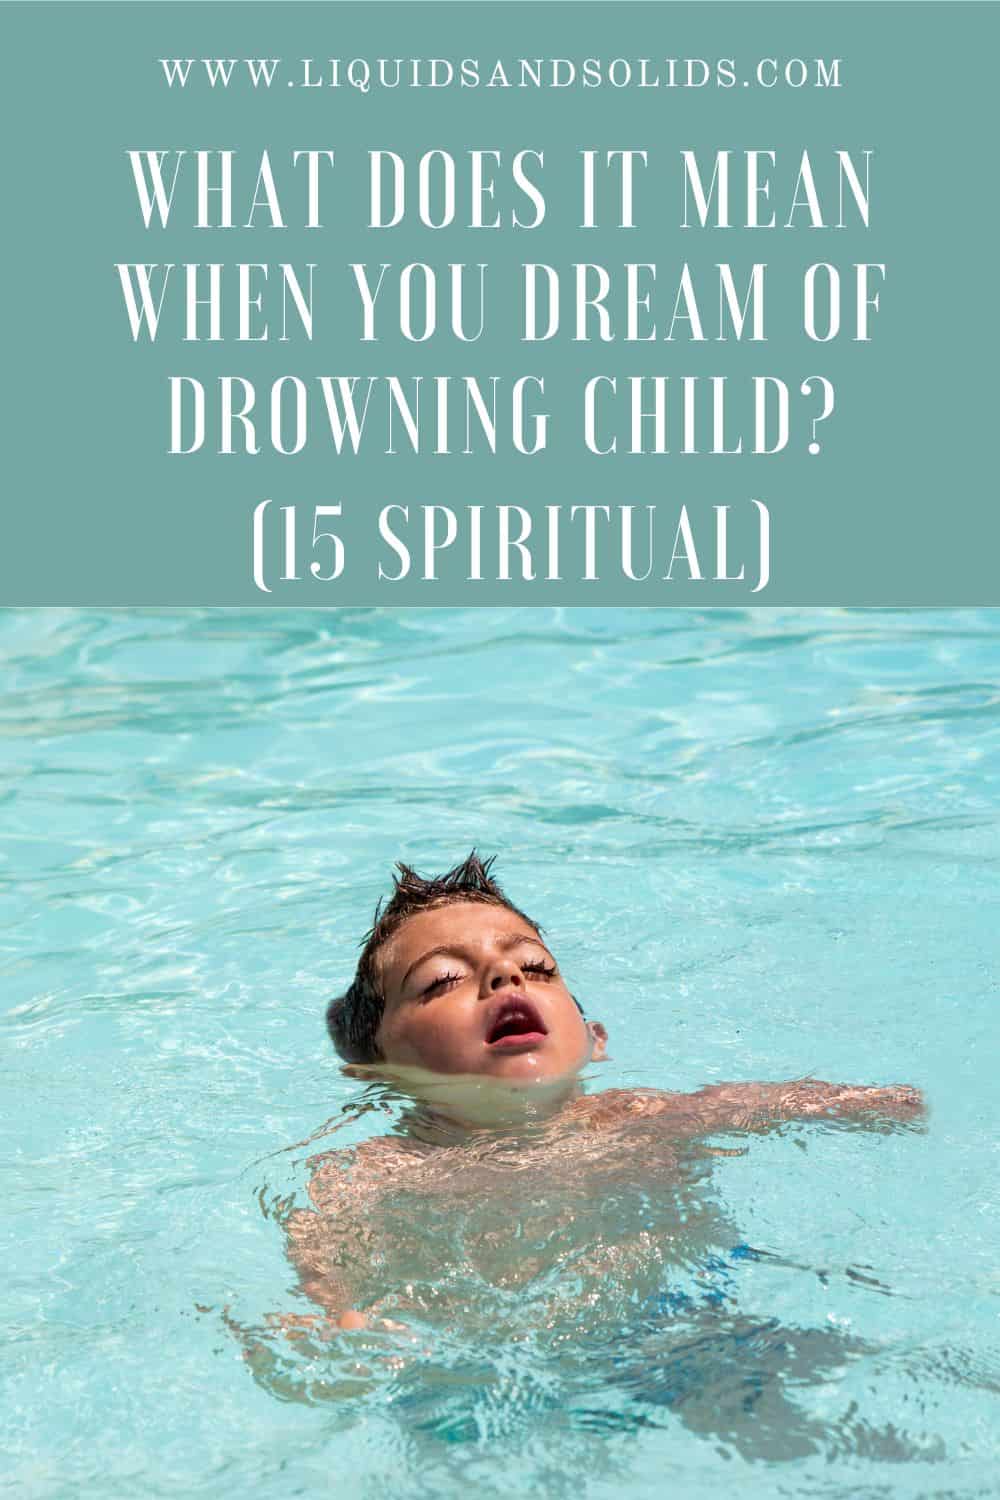  Drøm om drukning af barn? (15 spirituelle betydninger)